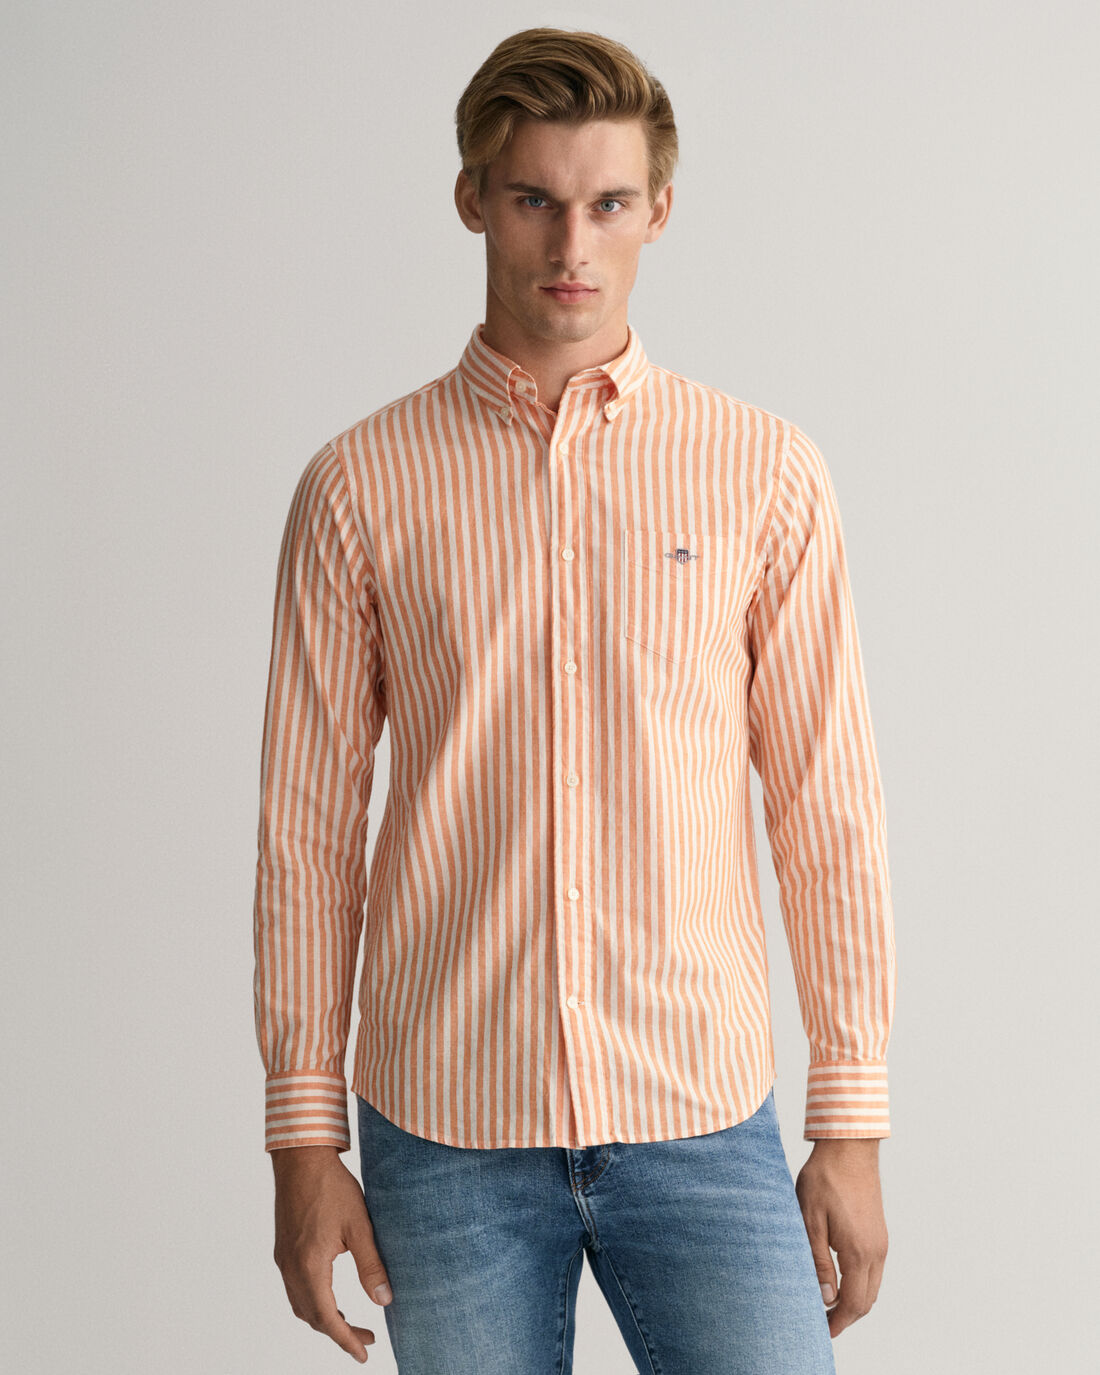 Reg cotton linnen stripe shirt